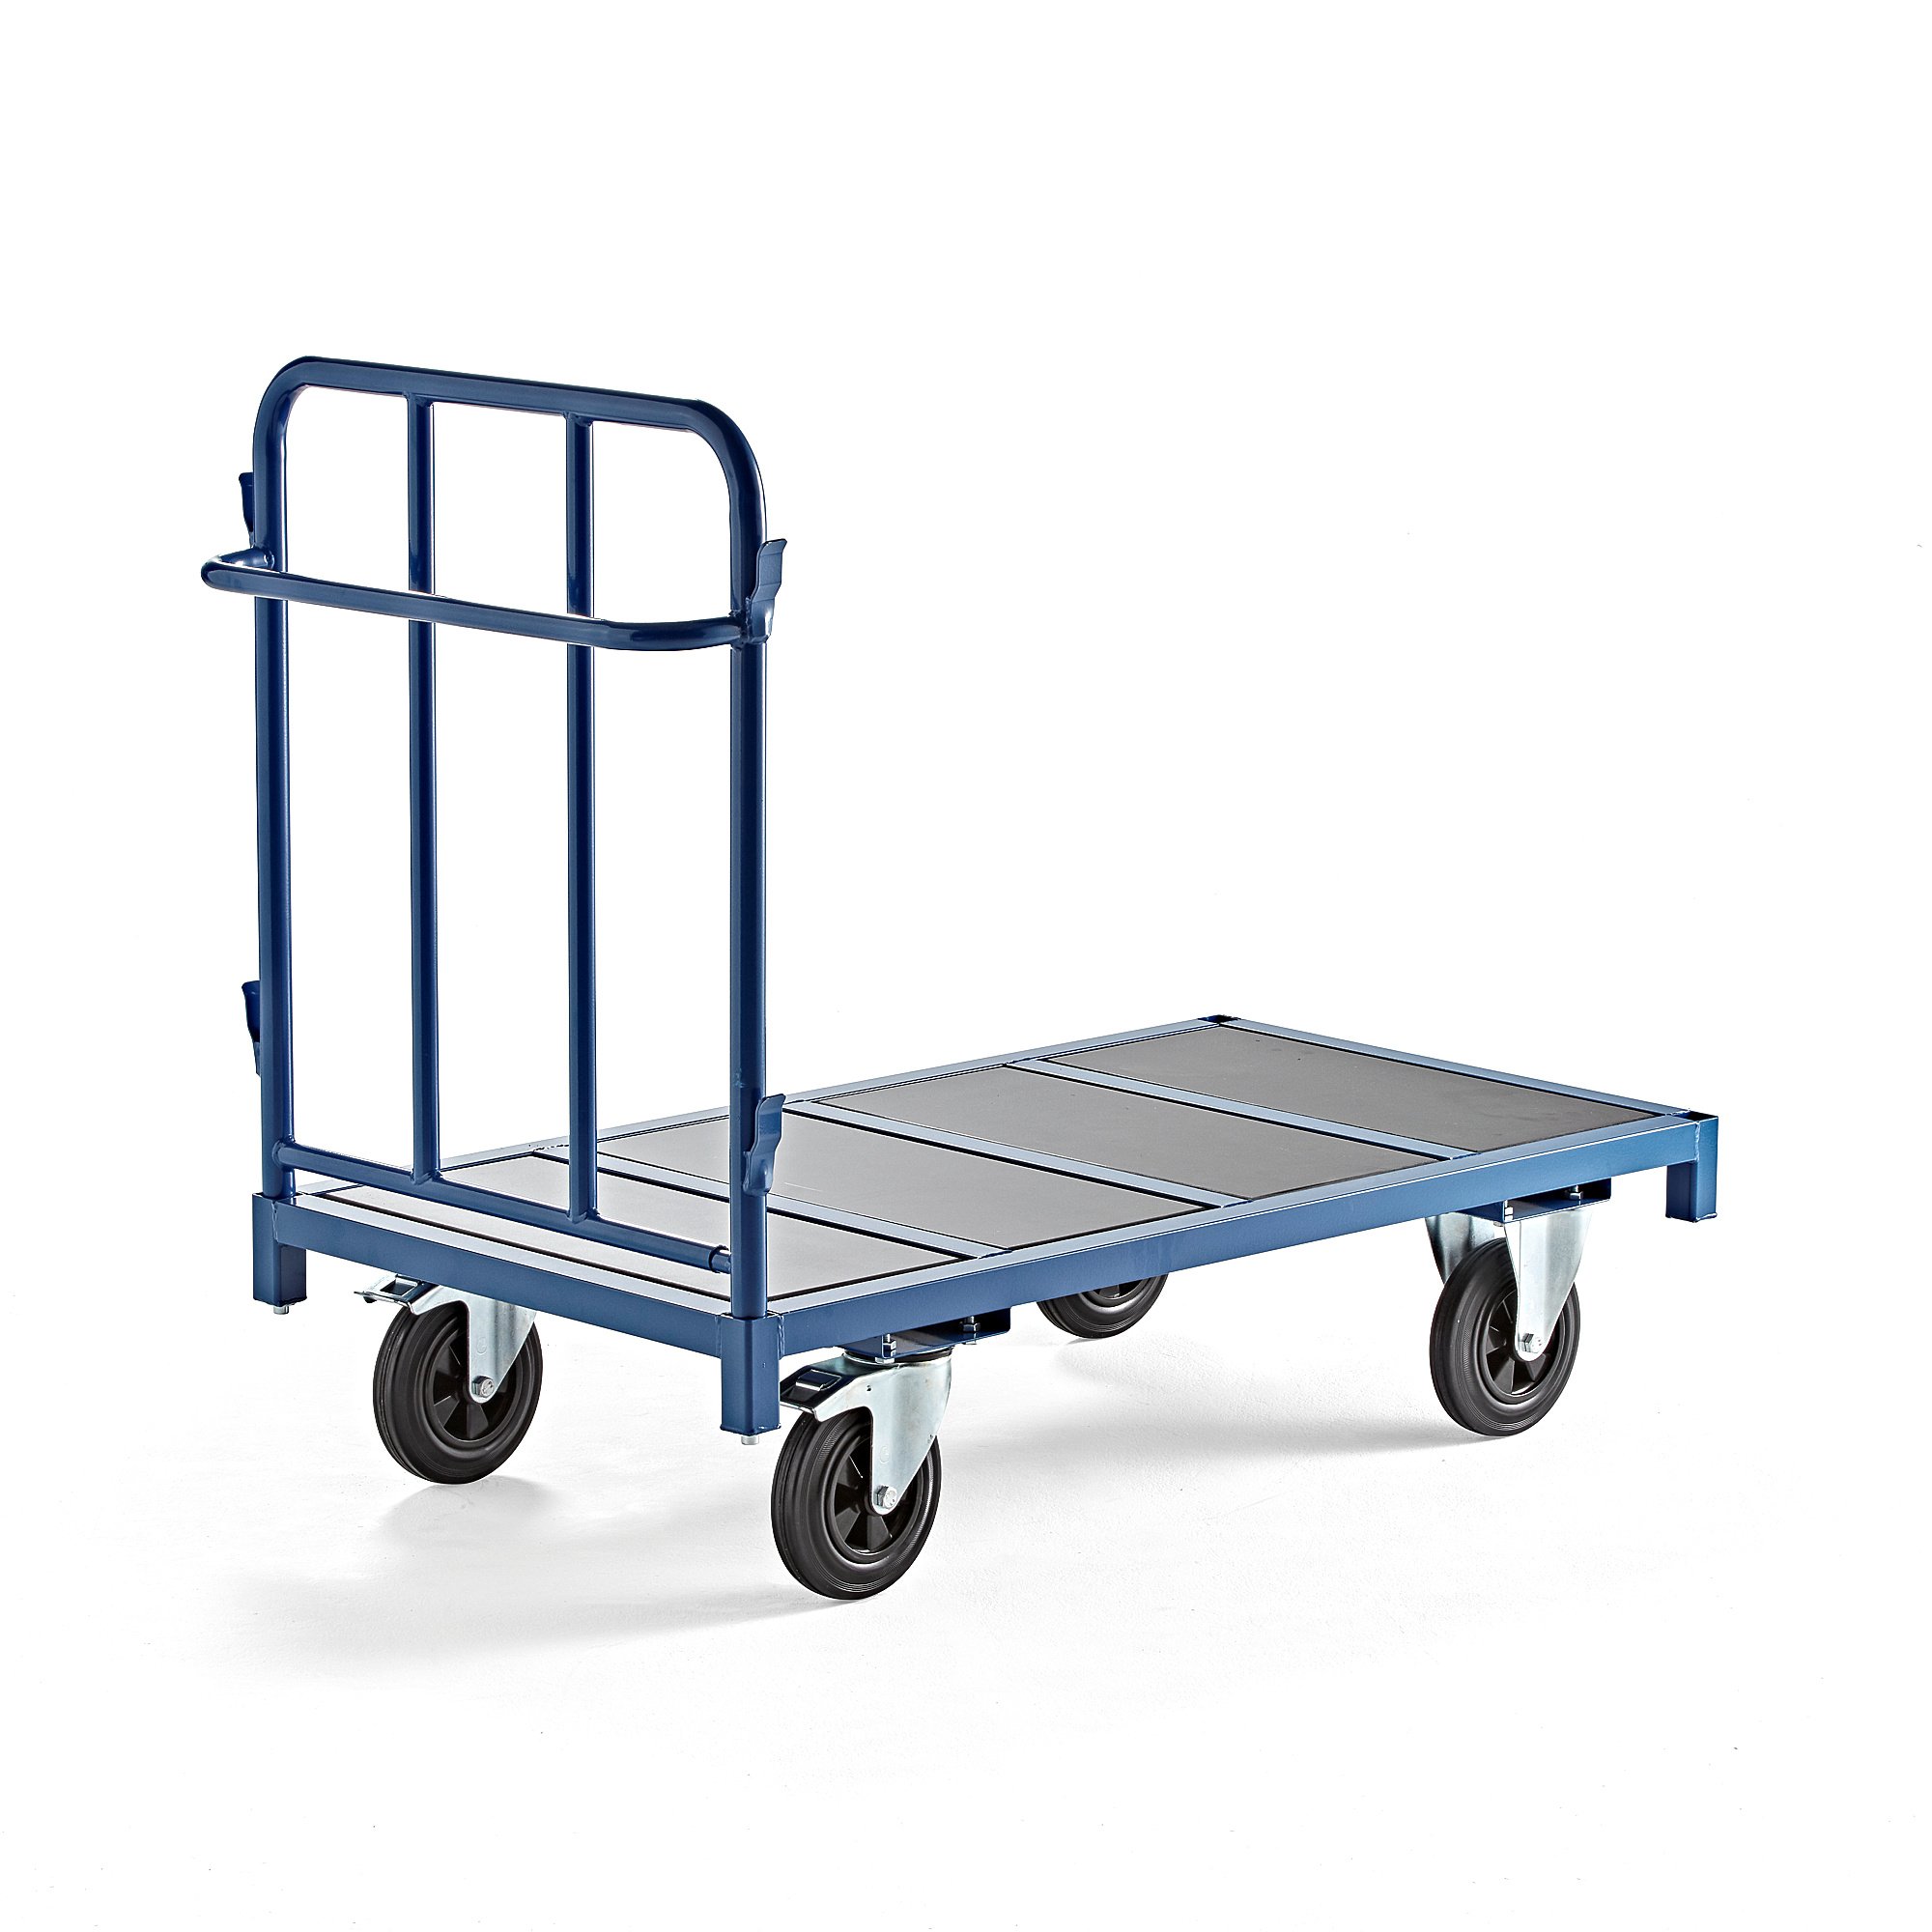 E-shop Plošinový vozík EMBARK, 1300x700 mm, 600 kg, modrý